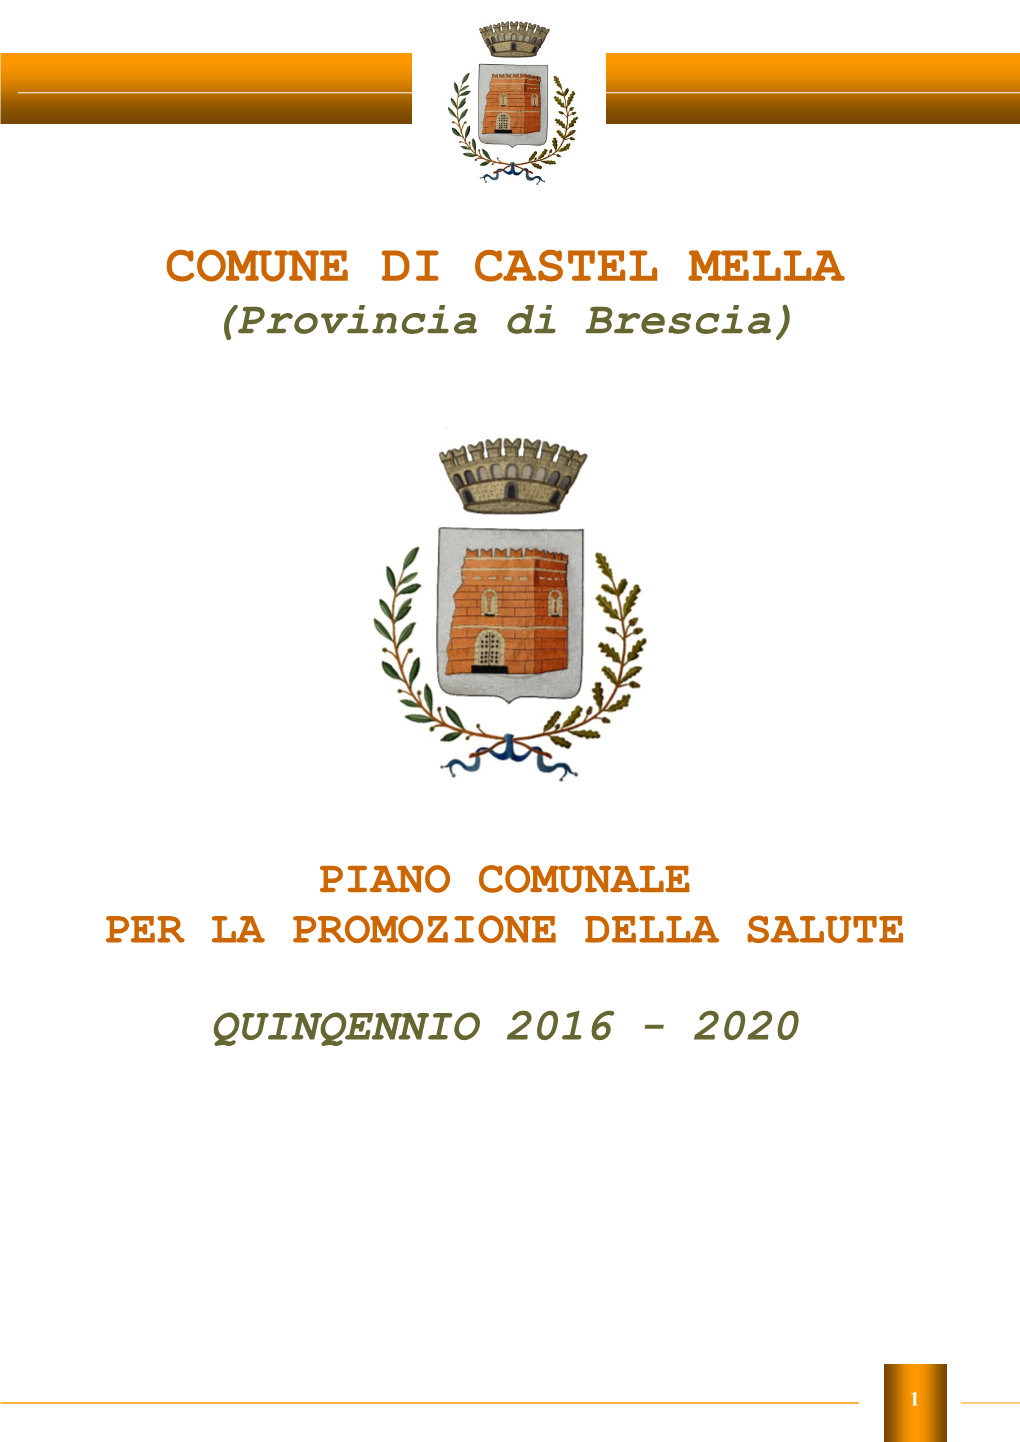 COMUNE DI CASTEL MELLA (Provincia Di Brescia)